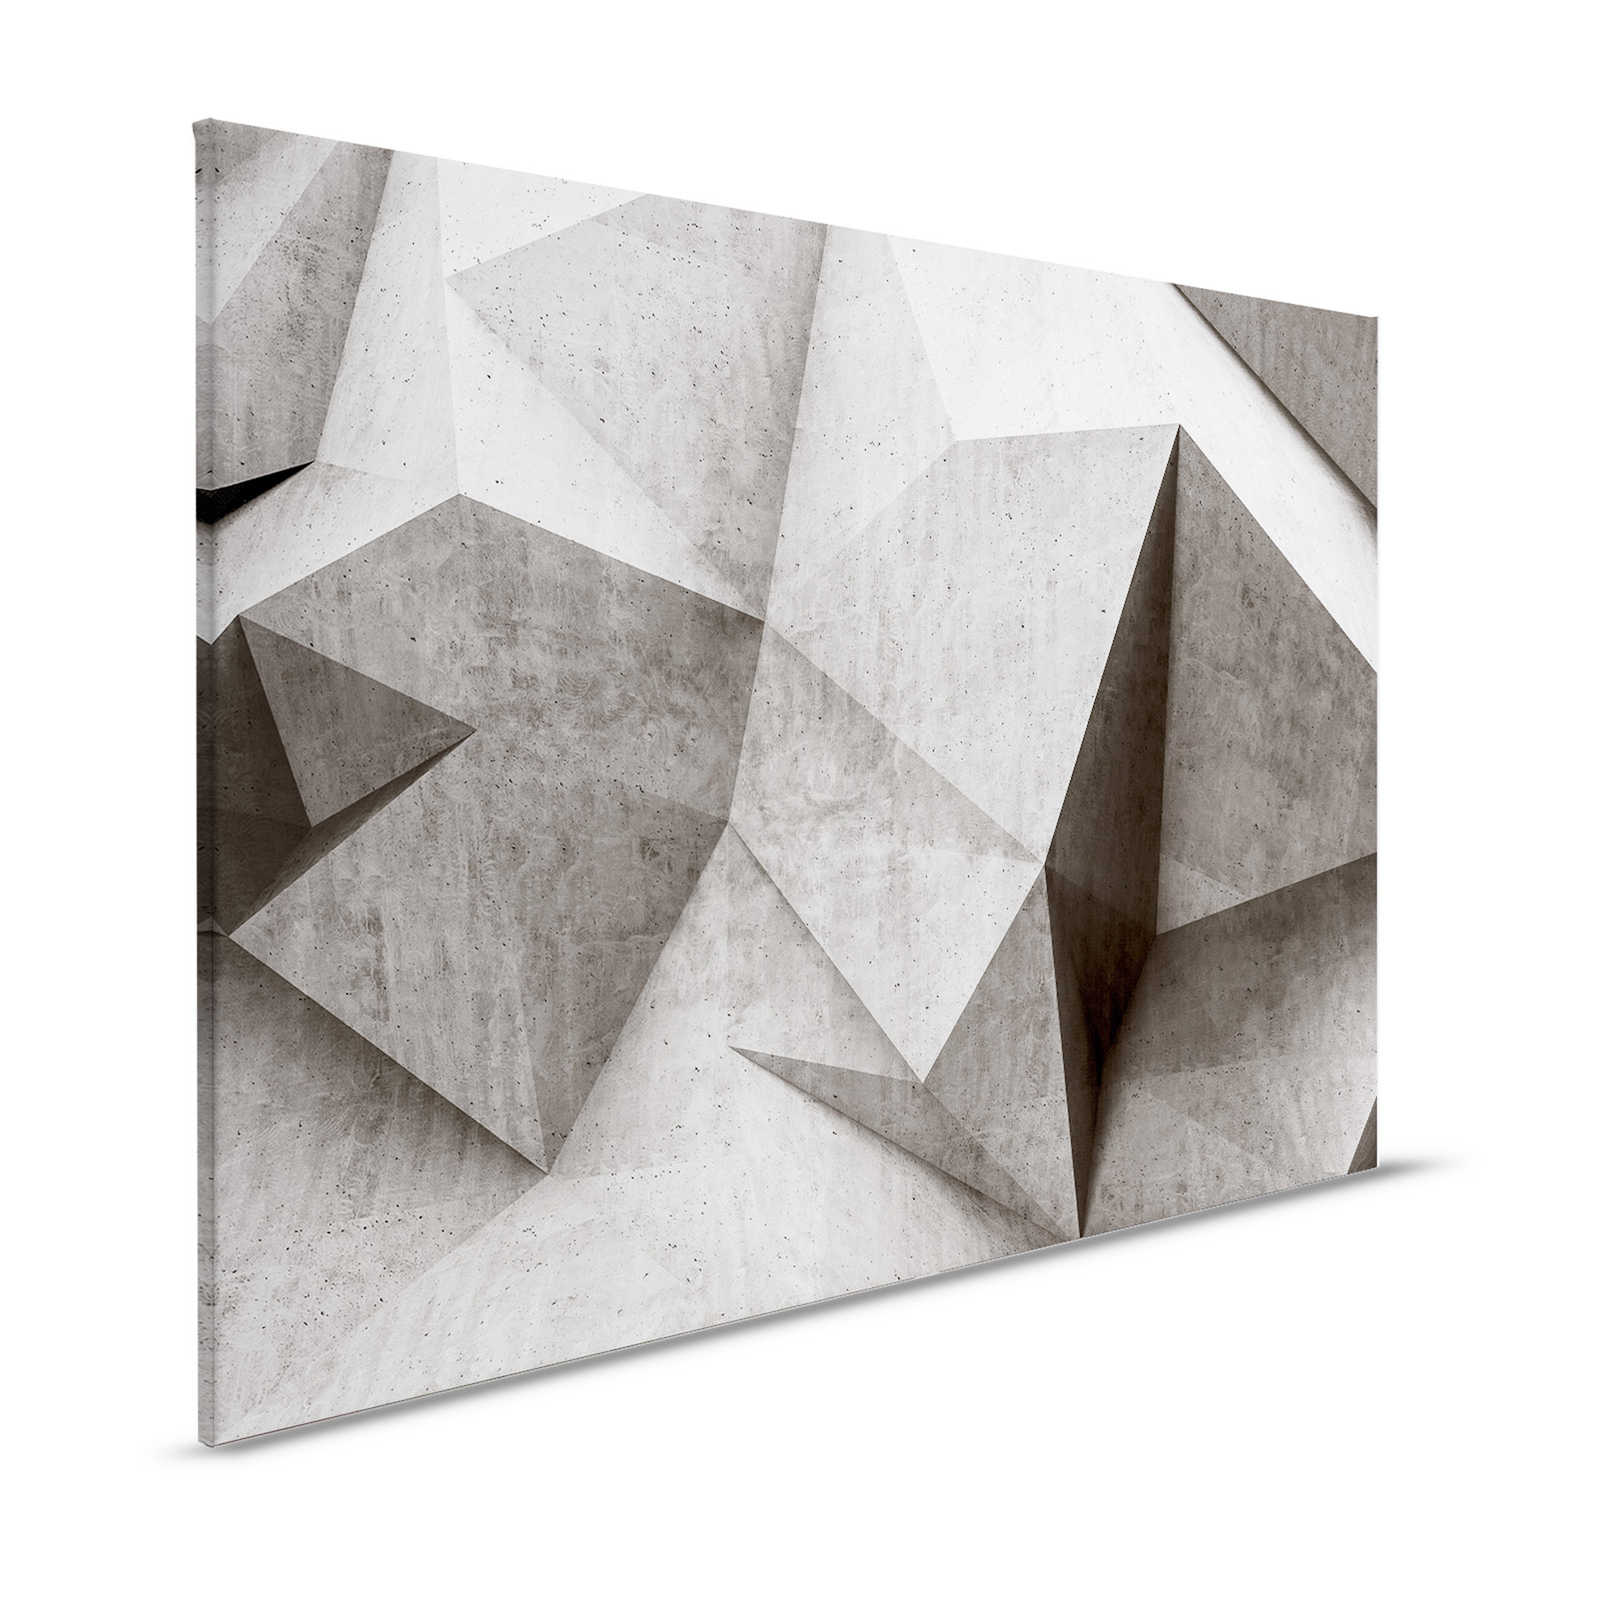 Boulder 1 - Pittura su tela con poligoni di cemento 3D - 1,20 m x 0,80 m
